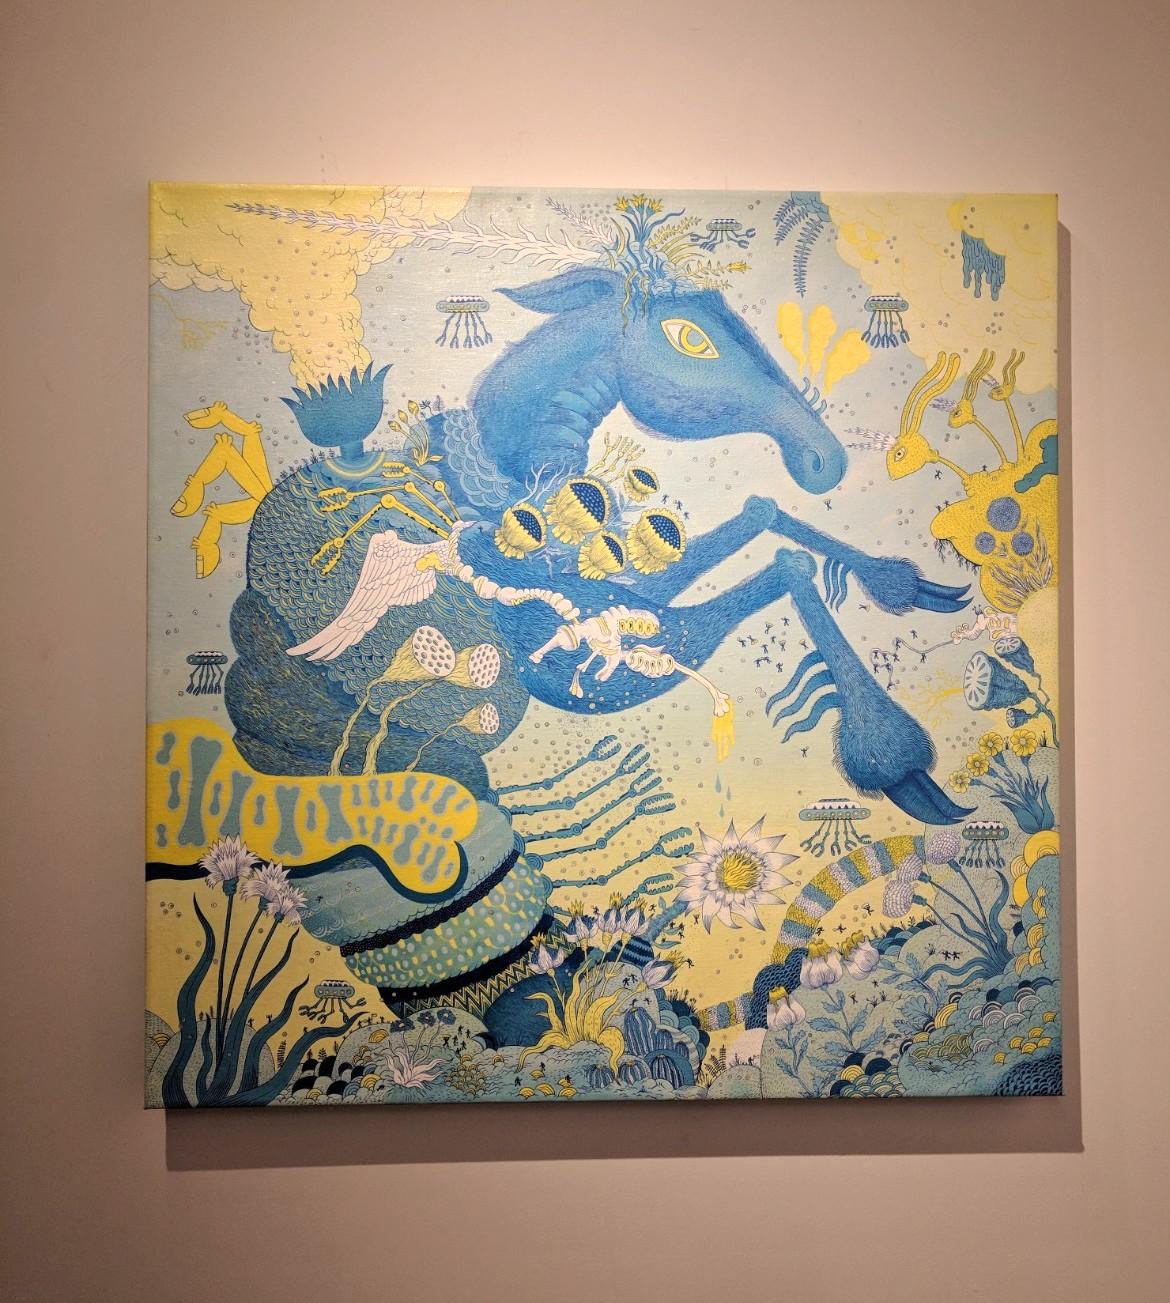 Blaues Pferdeboot, Pferd, Tier, Roboter, Blau, Grün, Futuristische Fantasie-Landschaft (Zeitgenössisch), Painting, von Peter Hamlin